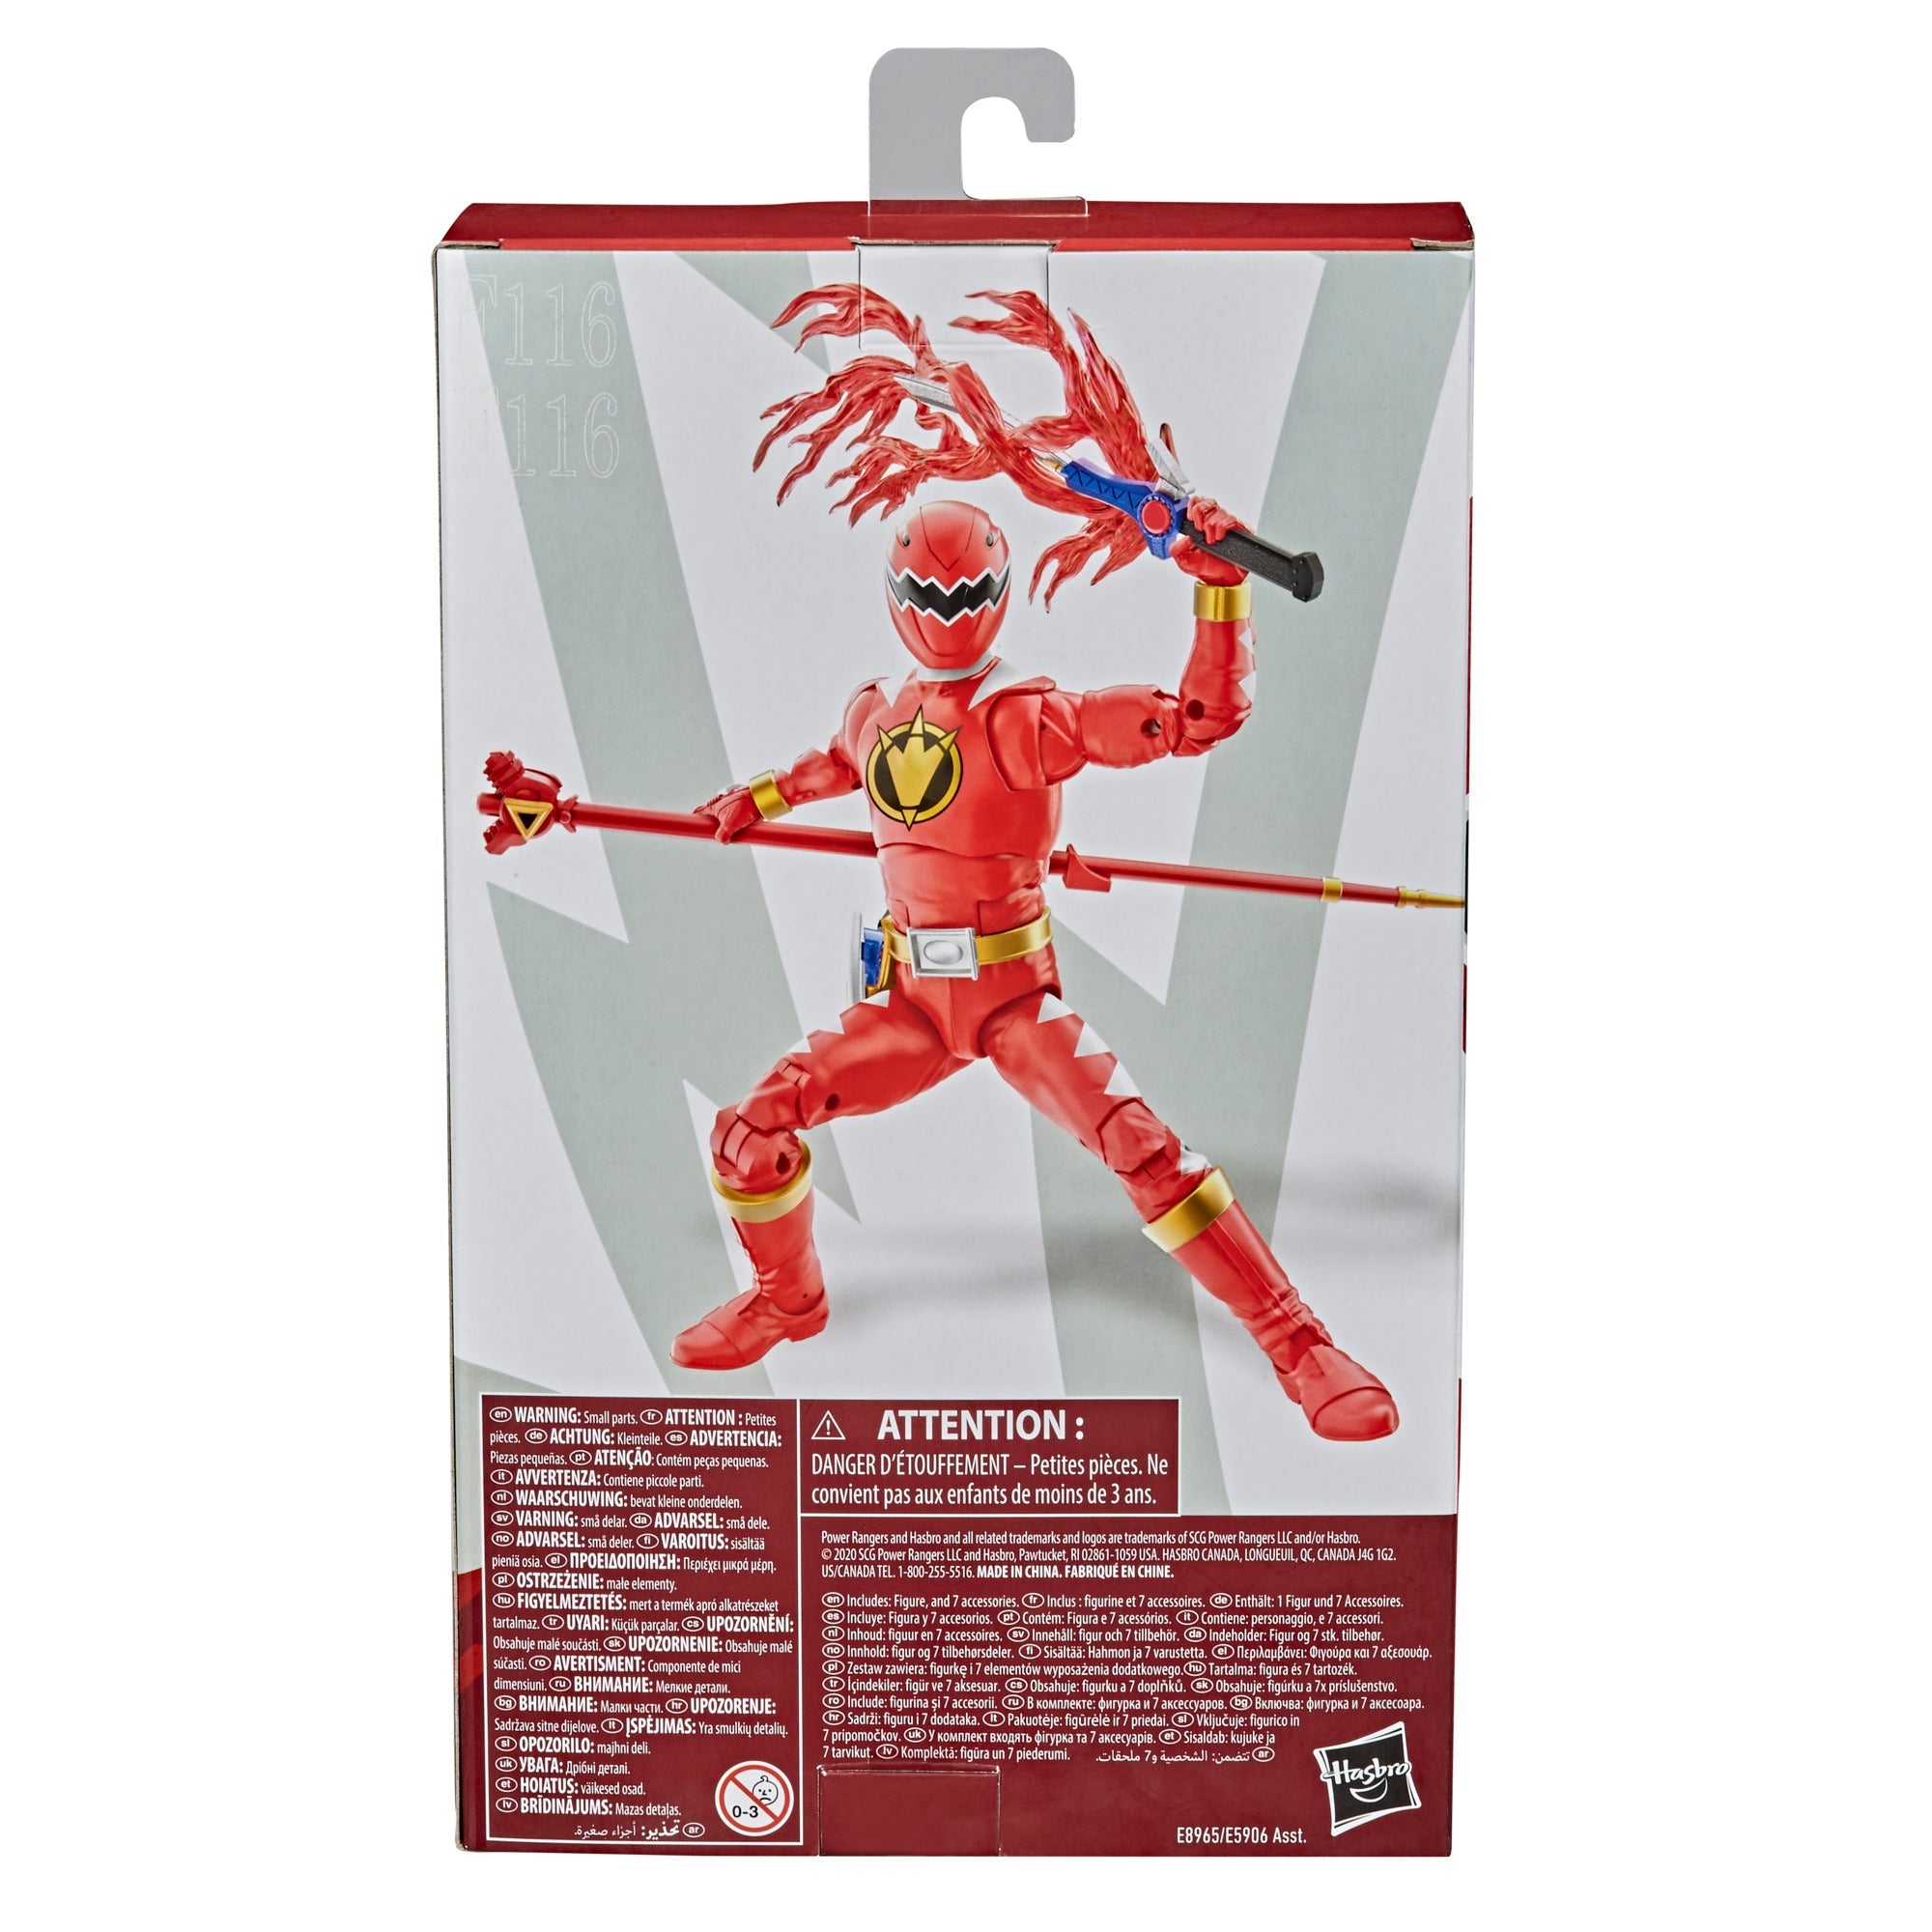 Power Rangers Lightning Collection Dino Thunder Red Ranger Figure